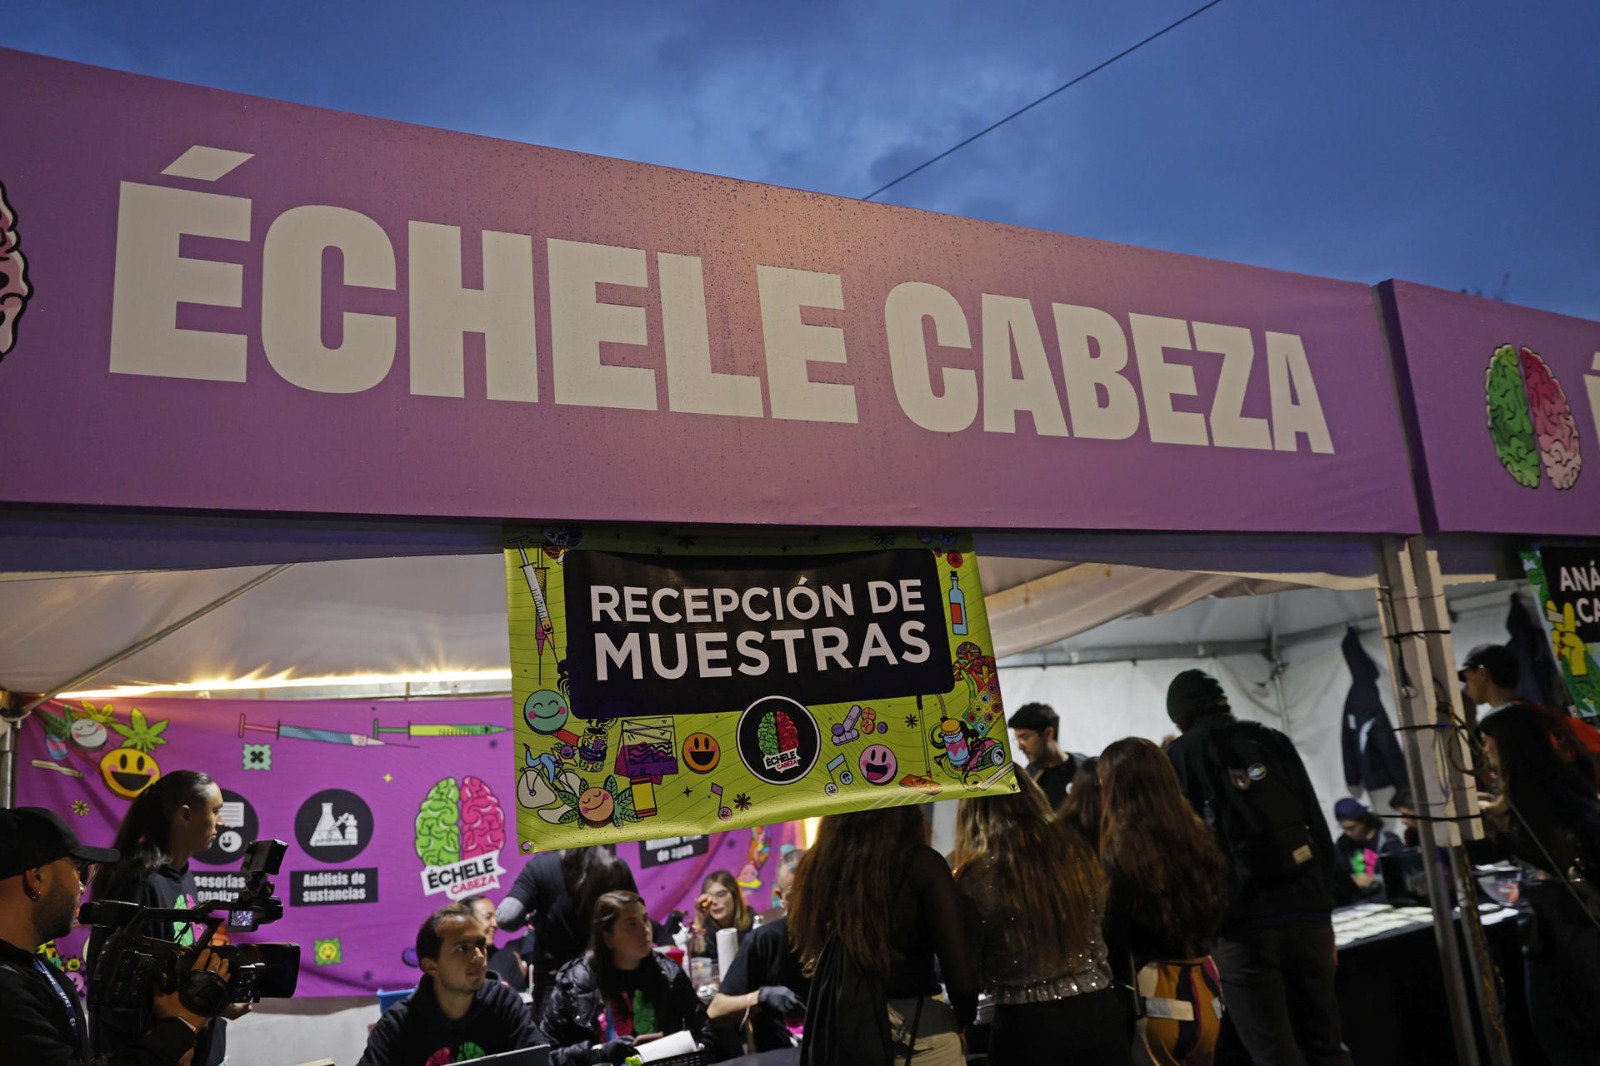 Échele Cabeza’: Una estrategia para mitigar los riesgos del consumo de drogas en Colombia